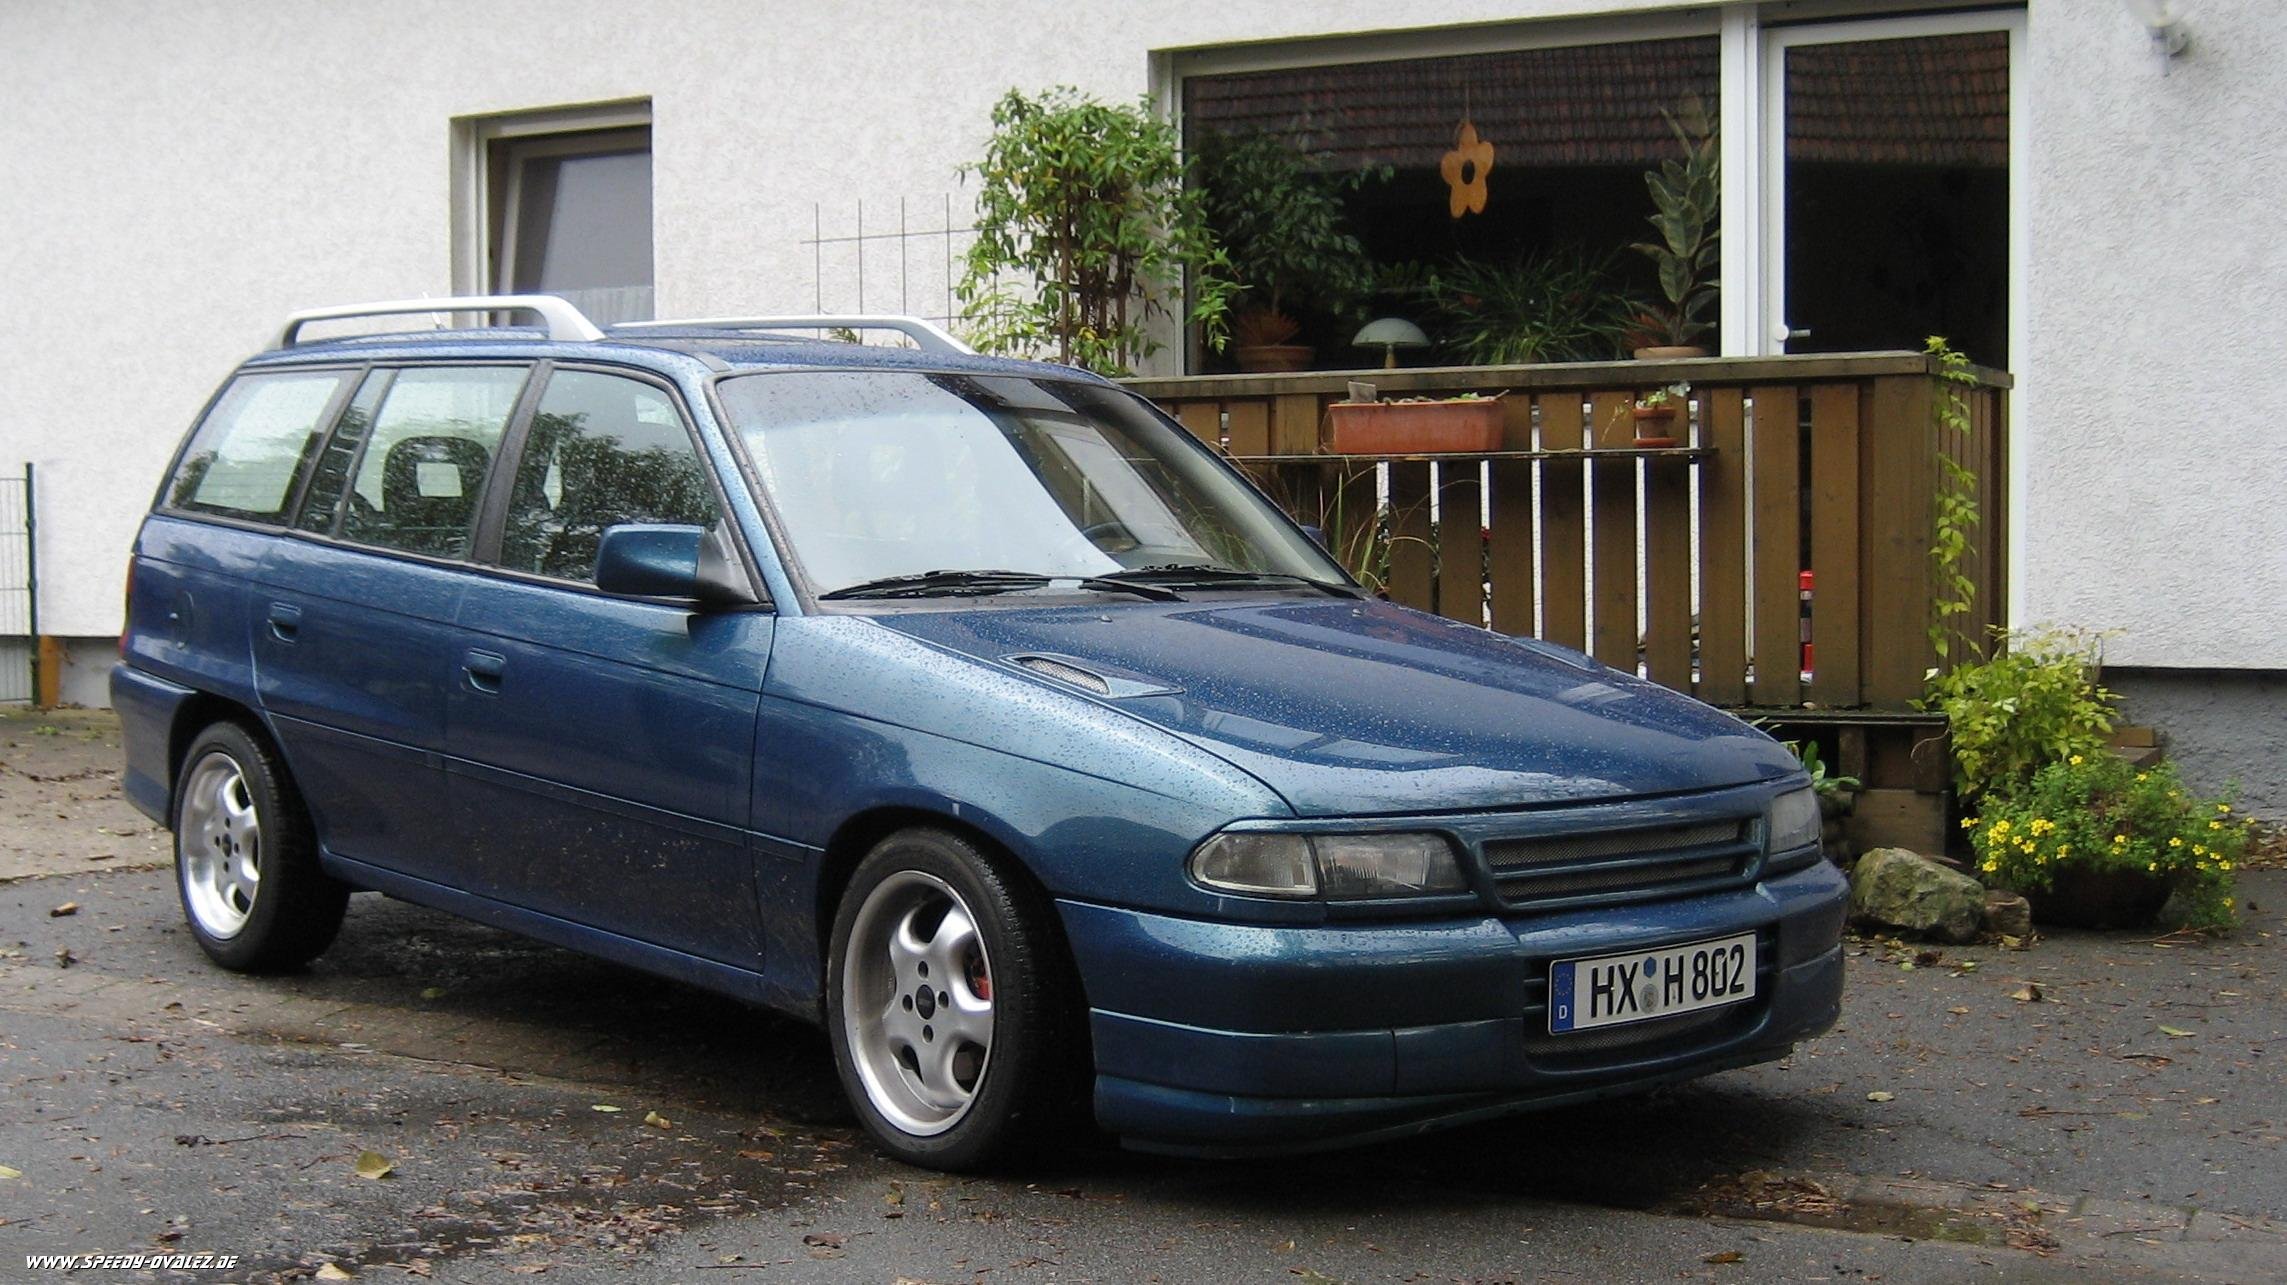 Опель универсал f. Opel Astra Caravan 1995. Opel Astra f универсал 1994. Opel Astra f 2002 универсал. Opel Astra f 1995 универсал.